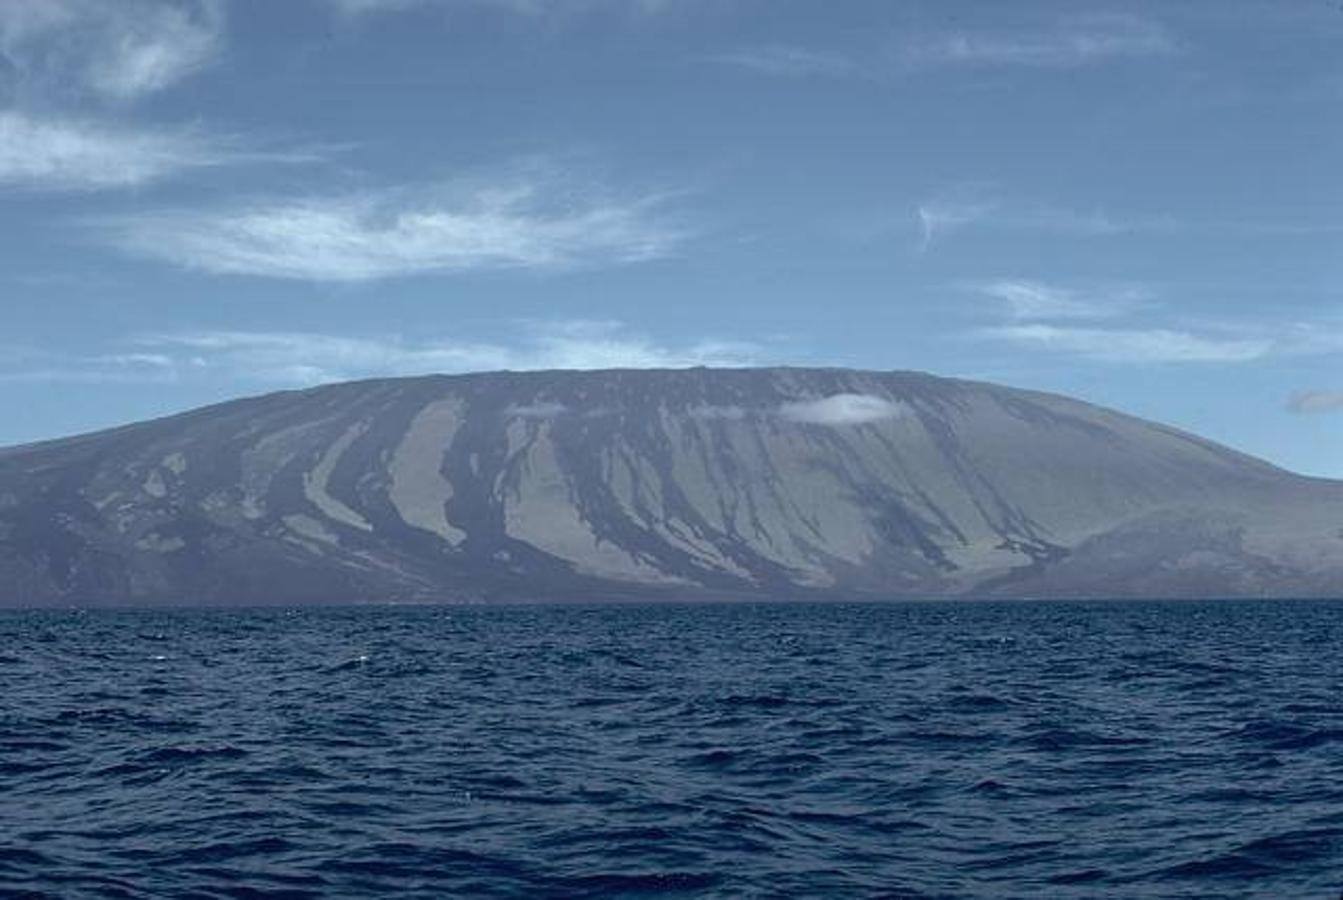 Volcán Wolf: Este volcán es el pico más alto de las Islas Galápagos y se encuentra concretamente situado en la Isla Isabela. Su última erupción es especialmente reciente ya que se produjo el 25 de mayo de 2015, tras haber estado 33 años sin actividad, pero al no encontrarse cerca de zonas habitadas, no representa gran peligro. 